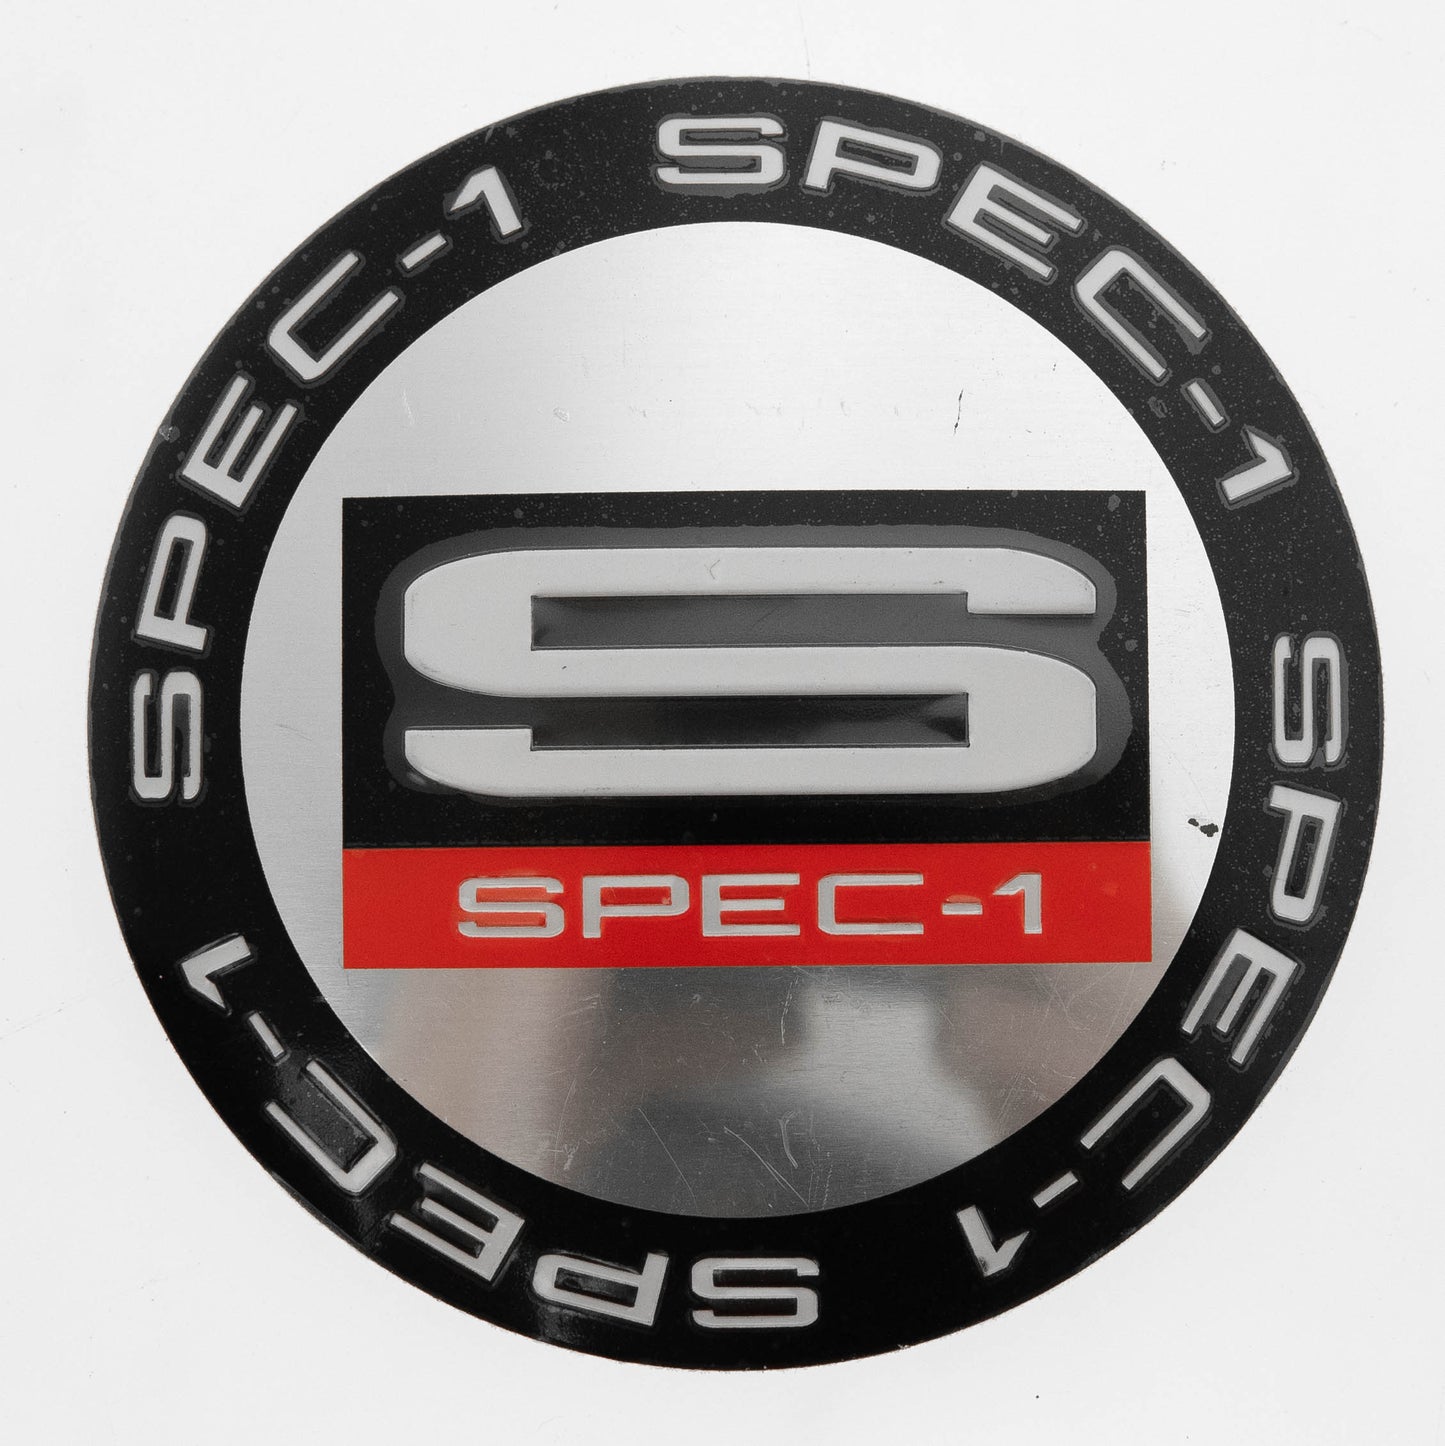 Spec-1 Cap Sticker Chrome Center W/ Black Ring For Sp-2 & Spt-21